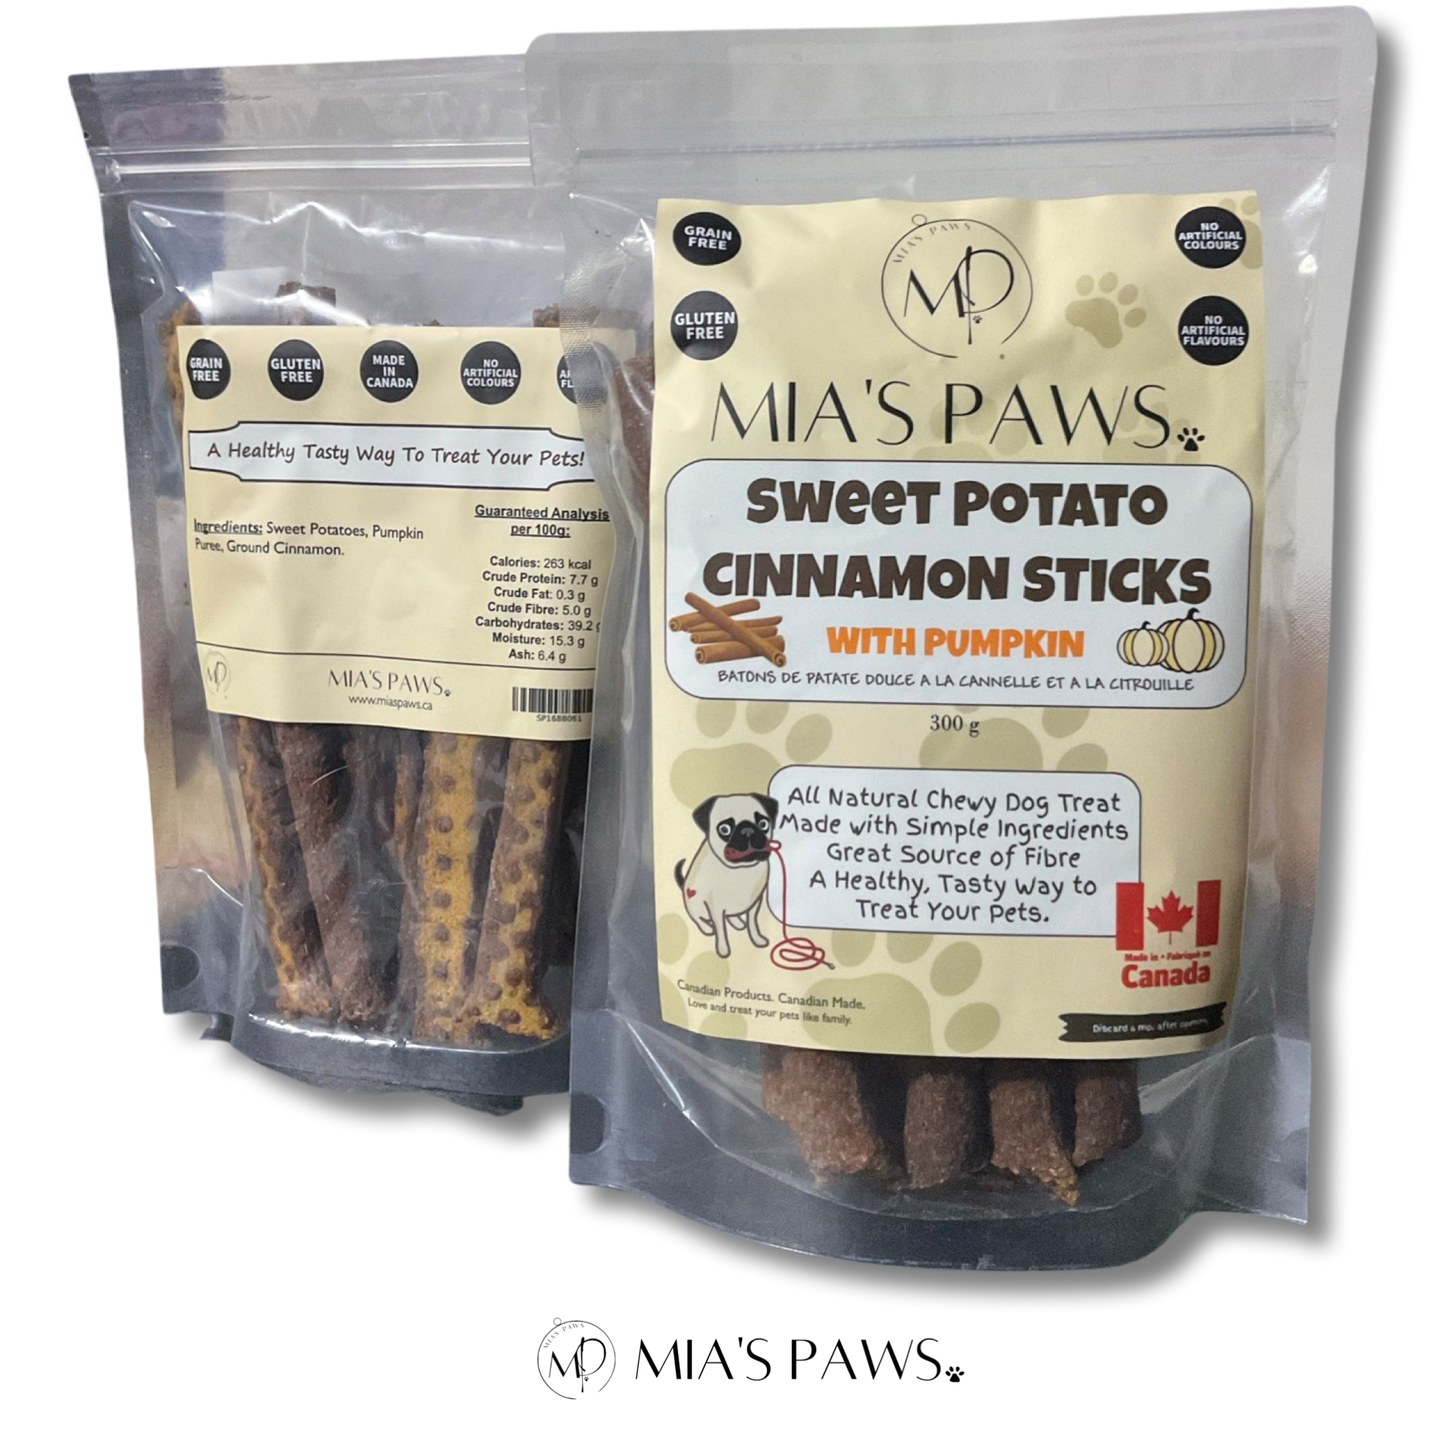 Sweet Potato Sticks - Mia's Paws